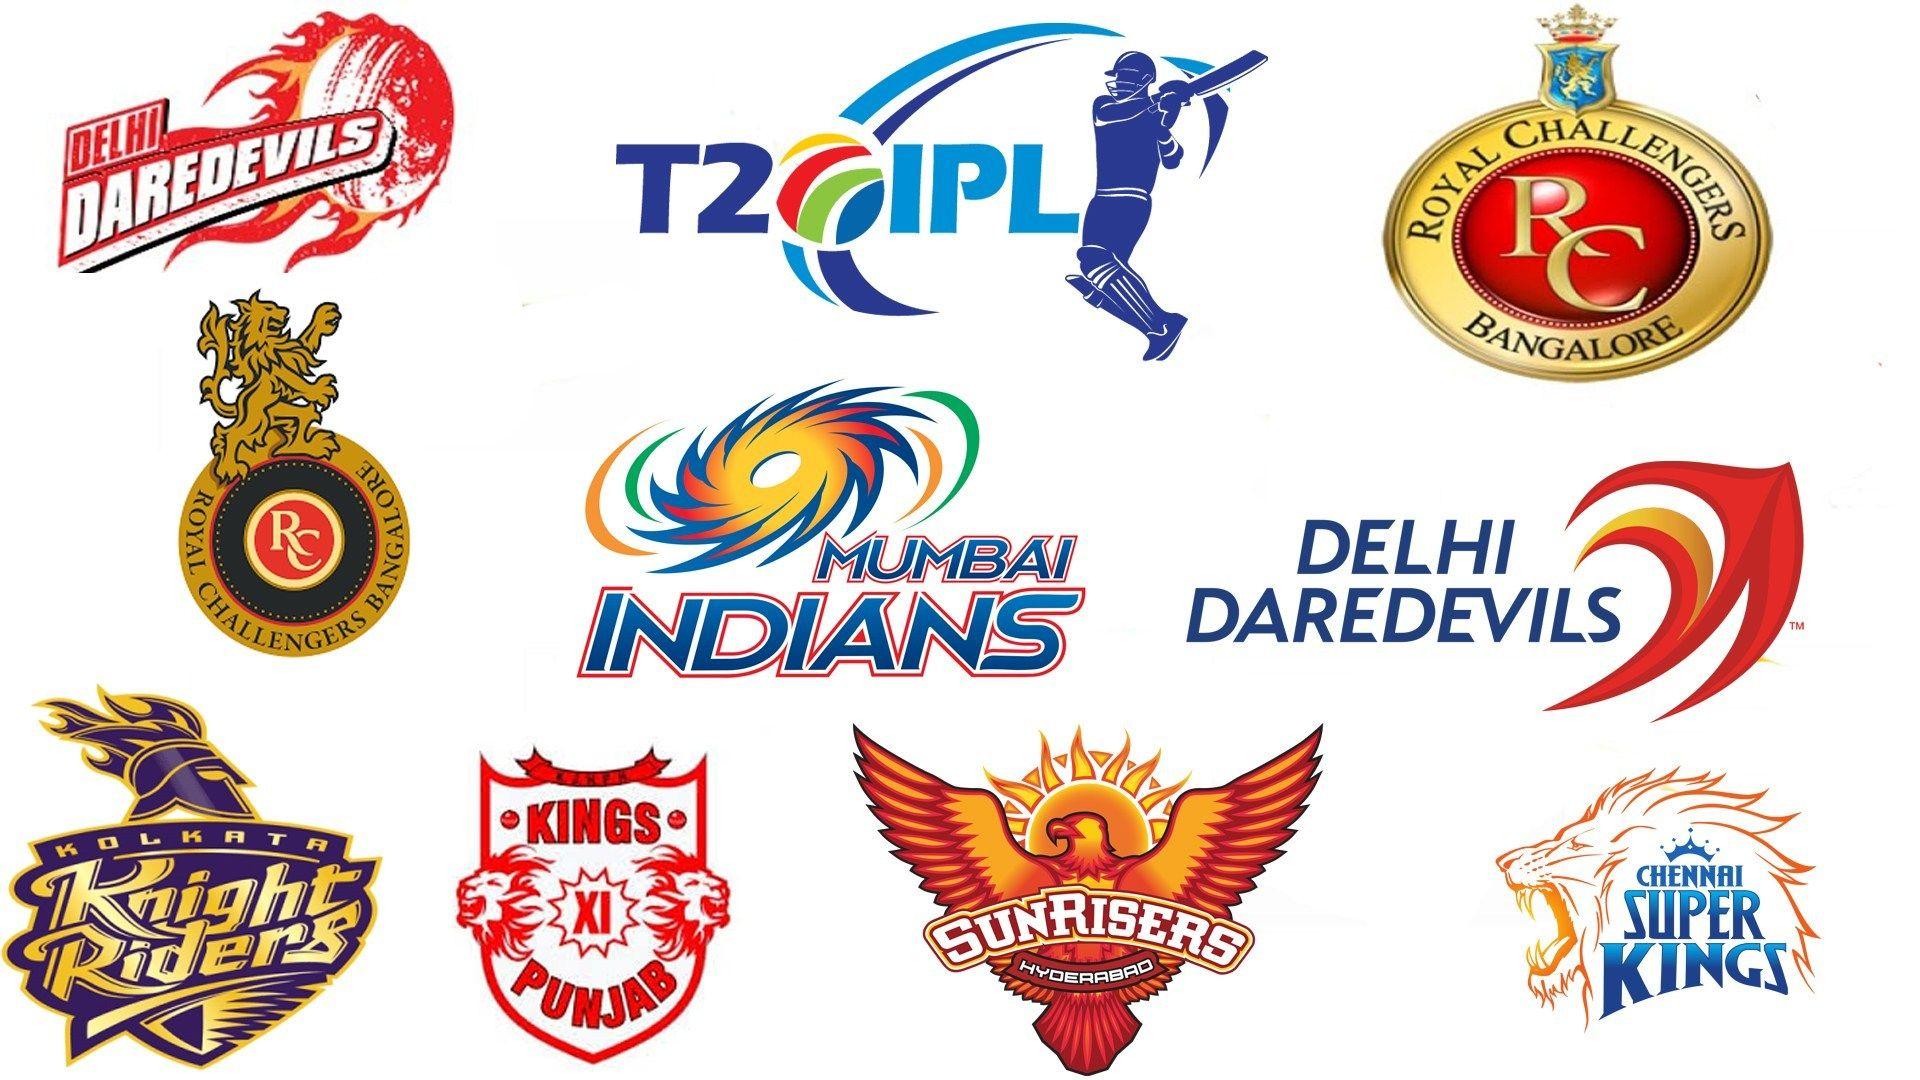 Chennai Super Kings Cricket Team | CSK | Chennai Super Kings Team News and  Matches